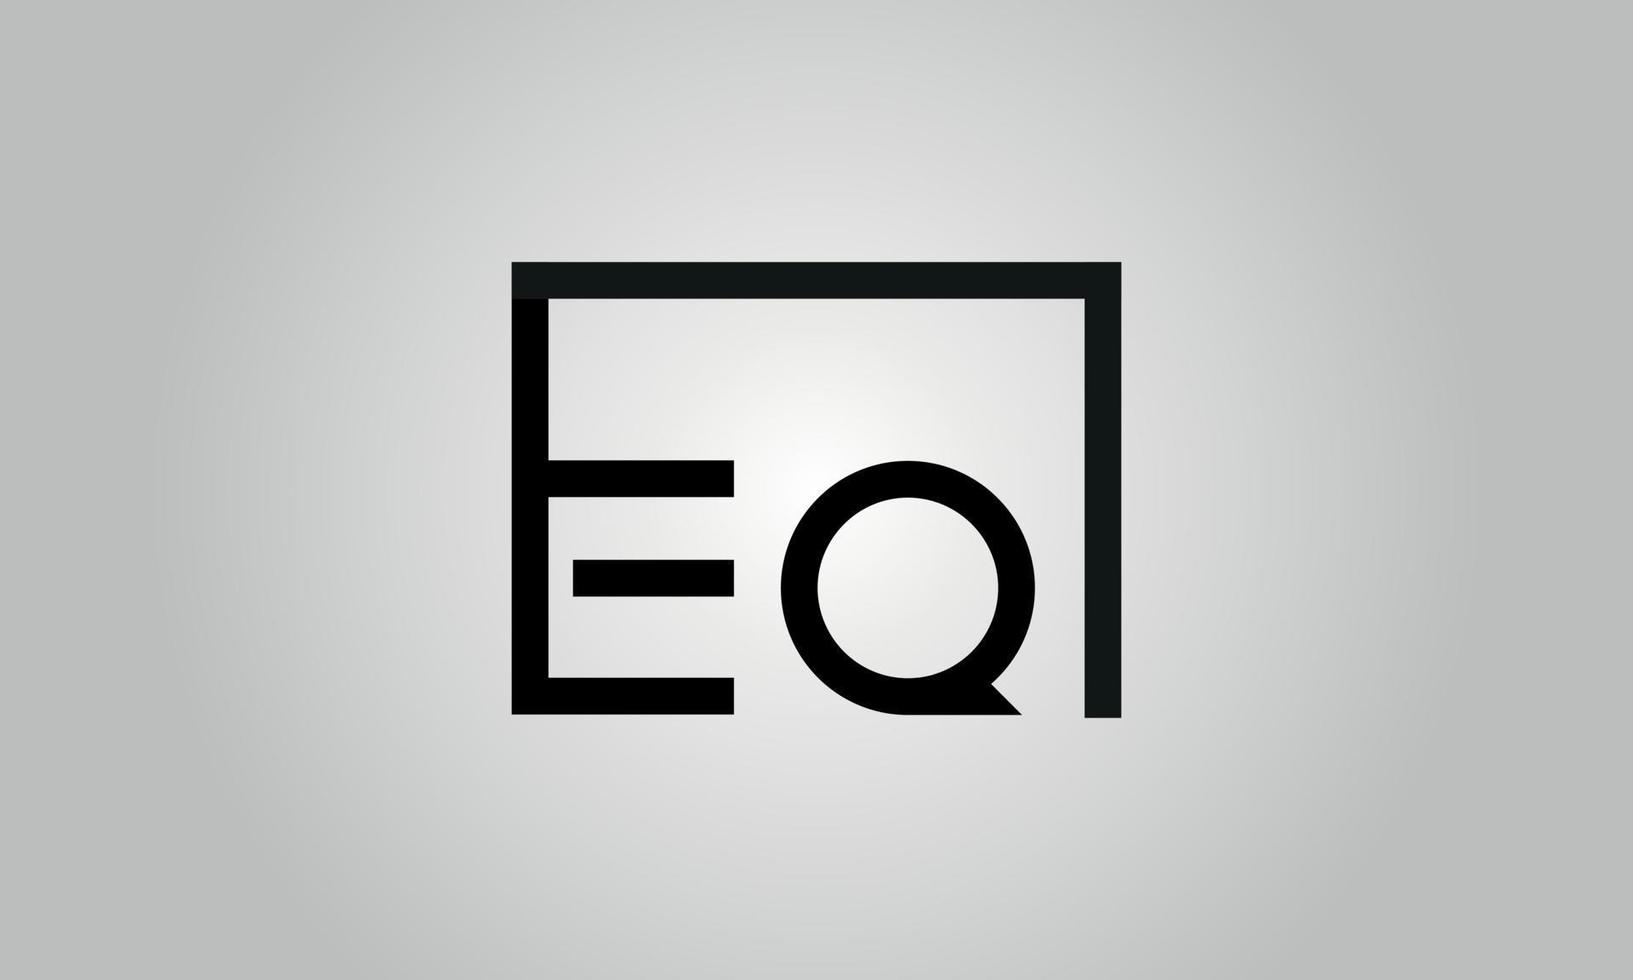 brief eq logo ontwerp. eq logo met plein vorm in zwart kleuren vector vrij vector sjabloon.